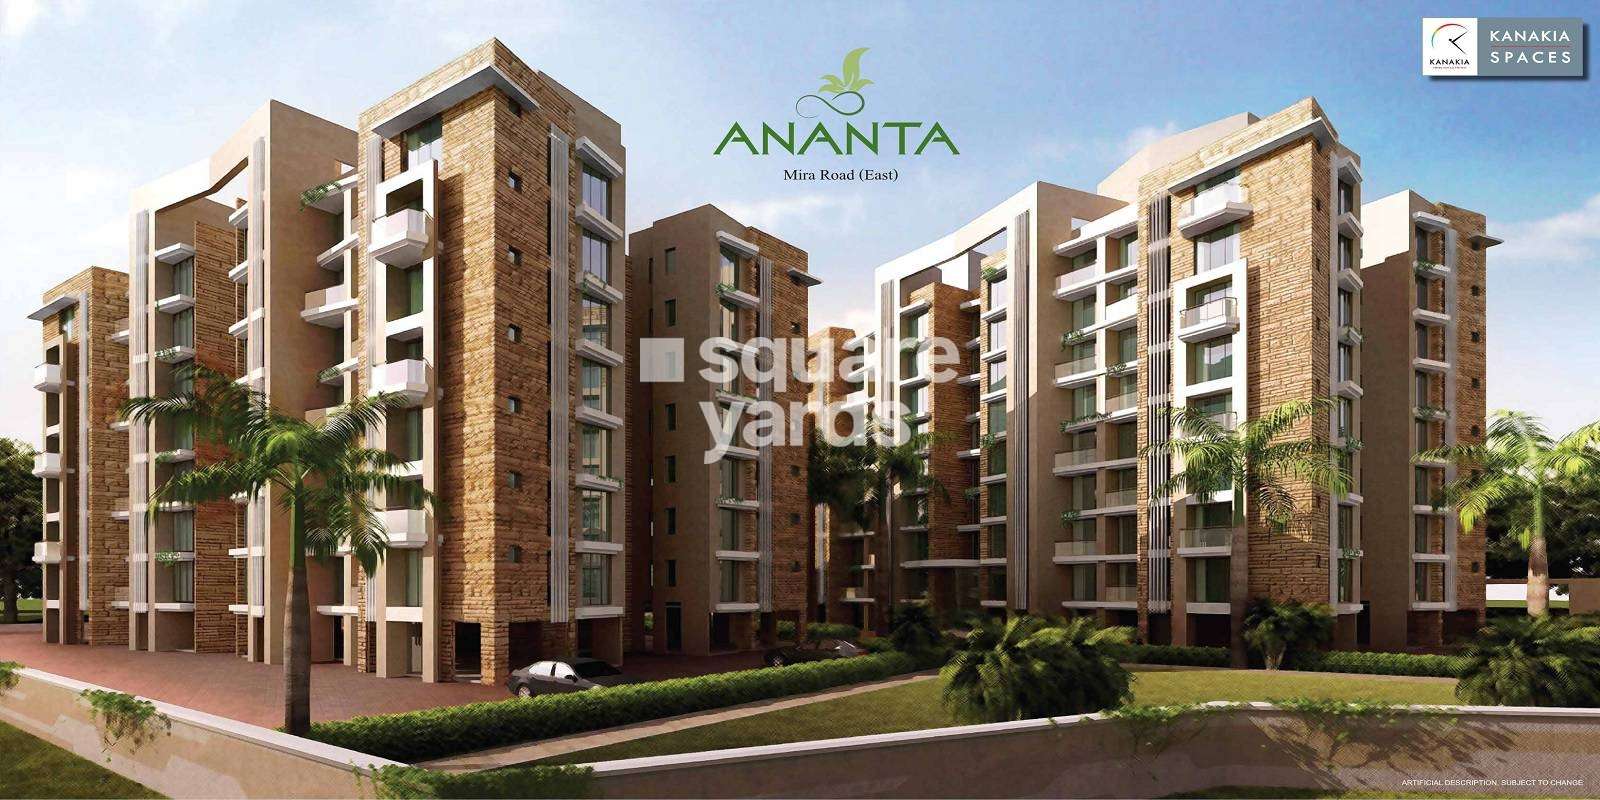 Kanakia Spaces Ananta Cover Image